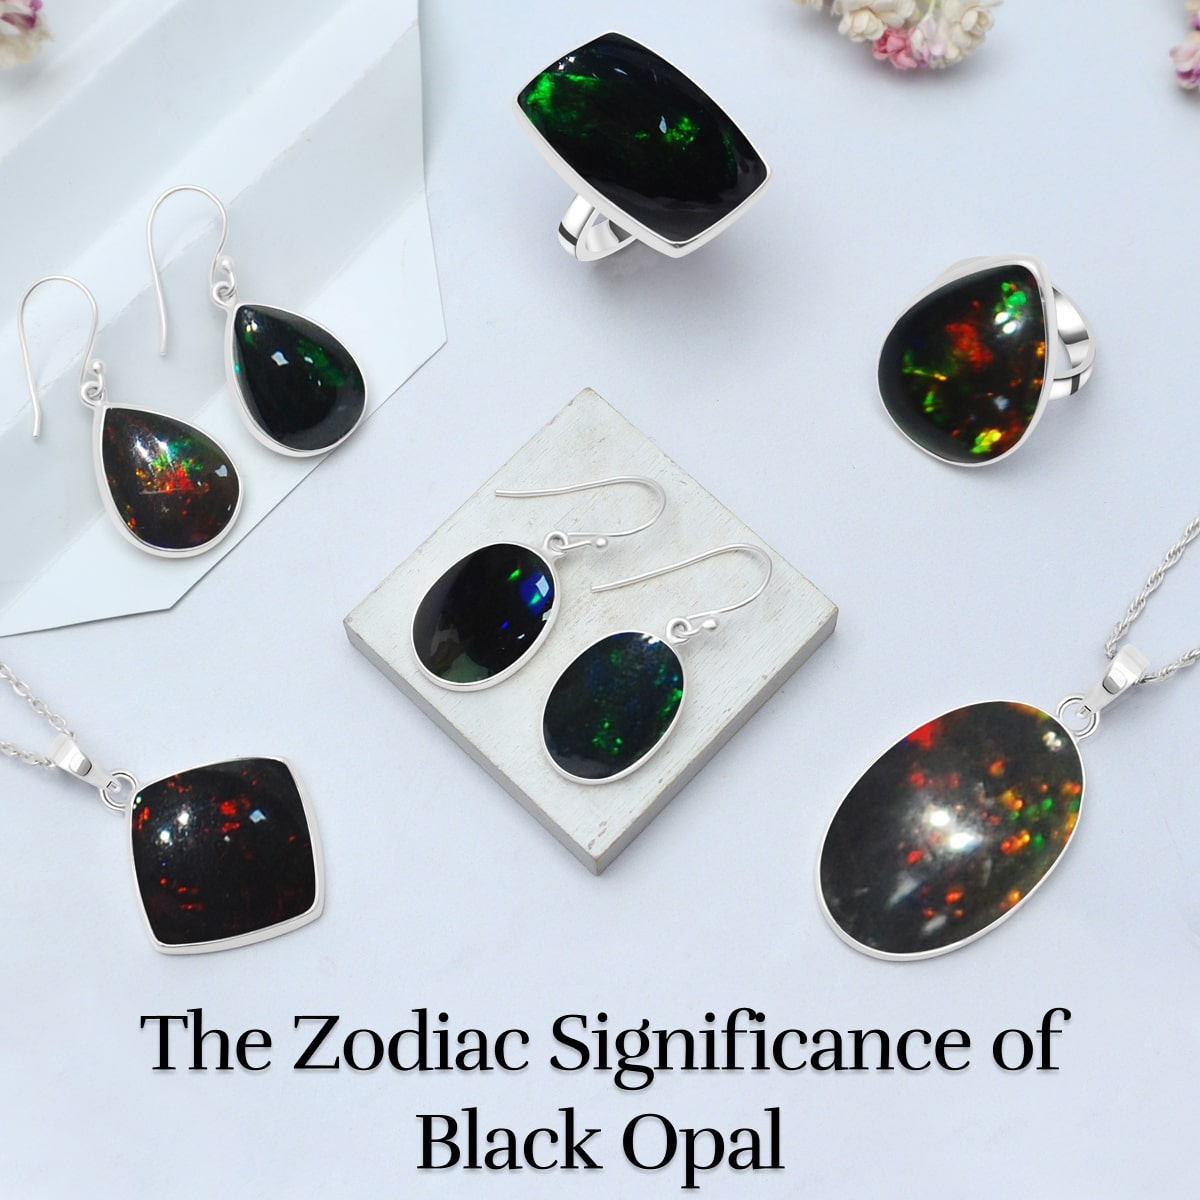 Black Opal & It’s Zodiac Association